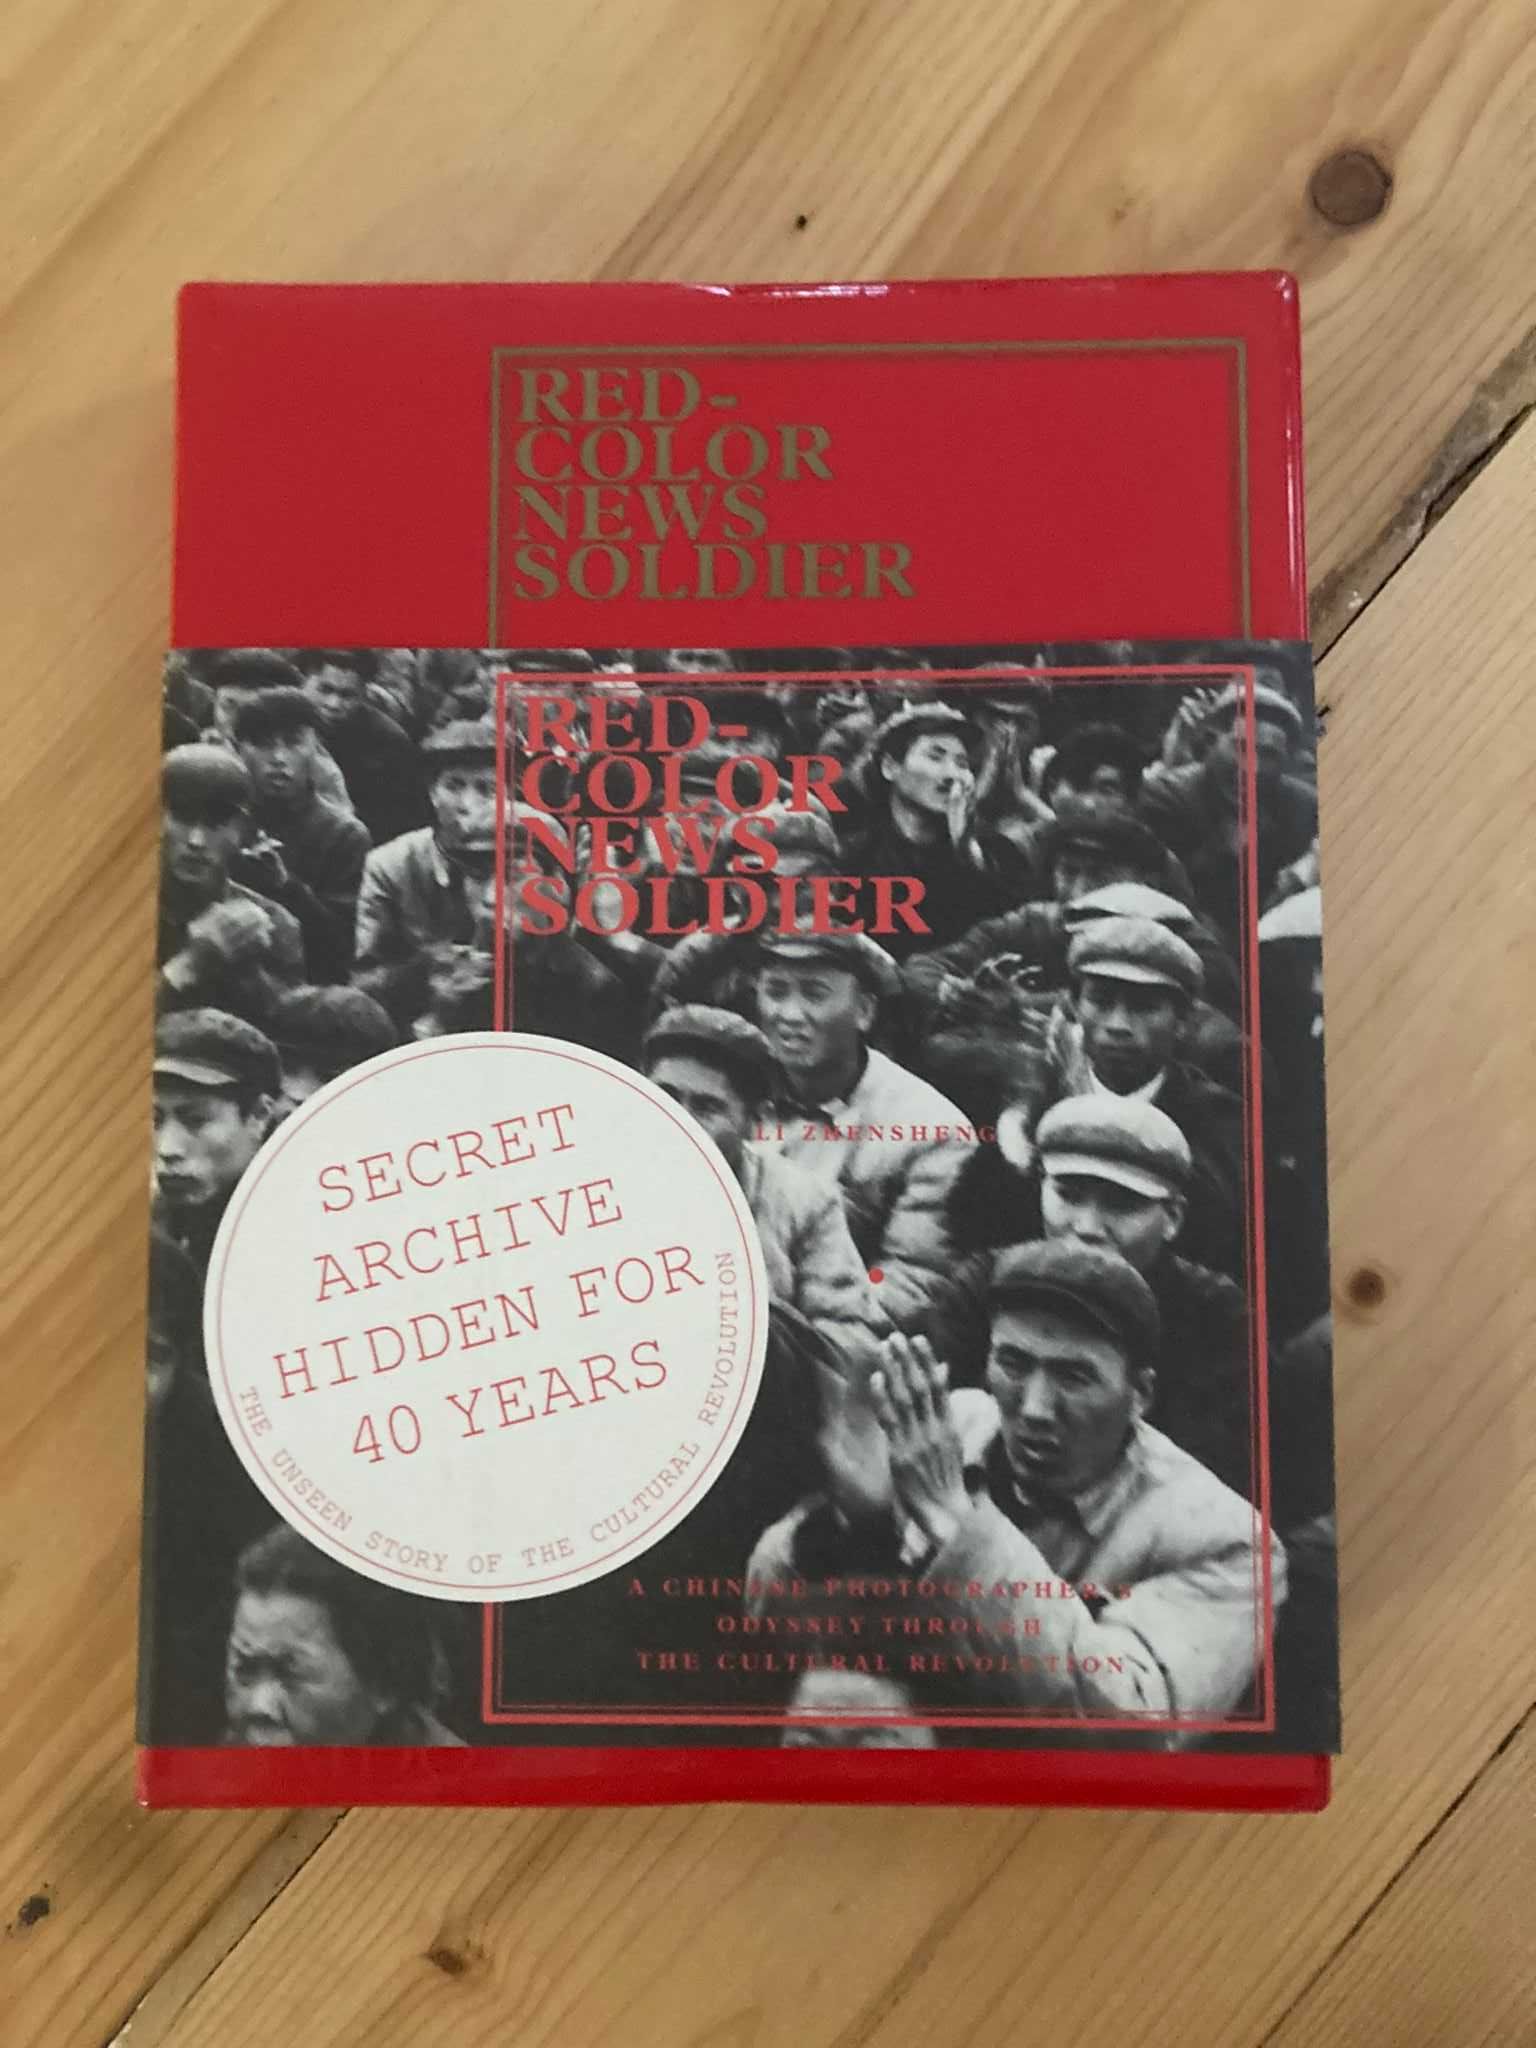 Red-Color News Soldier arhiva istorica revolutia culturala chineza